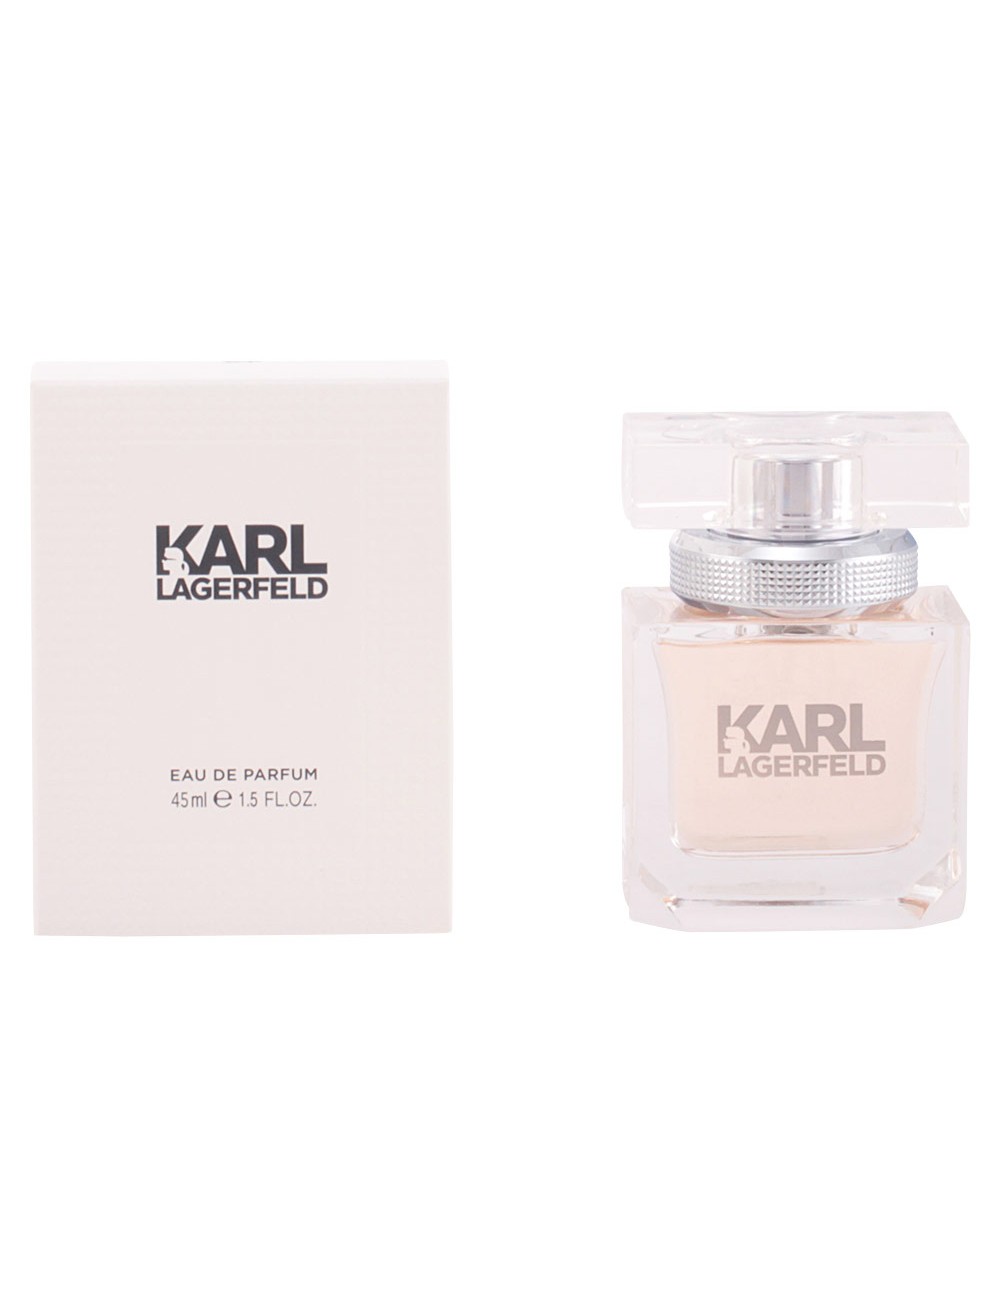 KARL LAGERFELD POUR FEMME eau de parfum vaporisateur